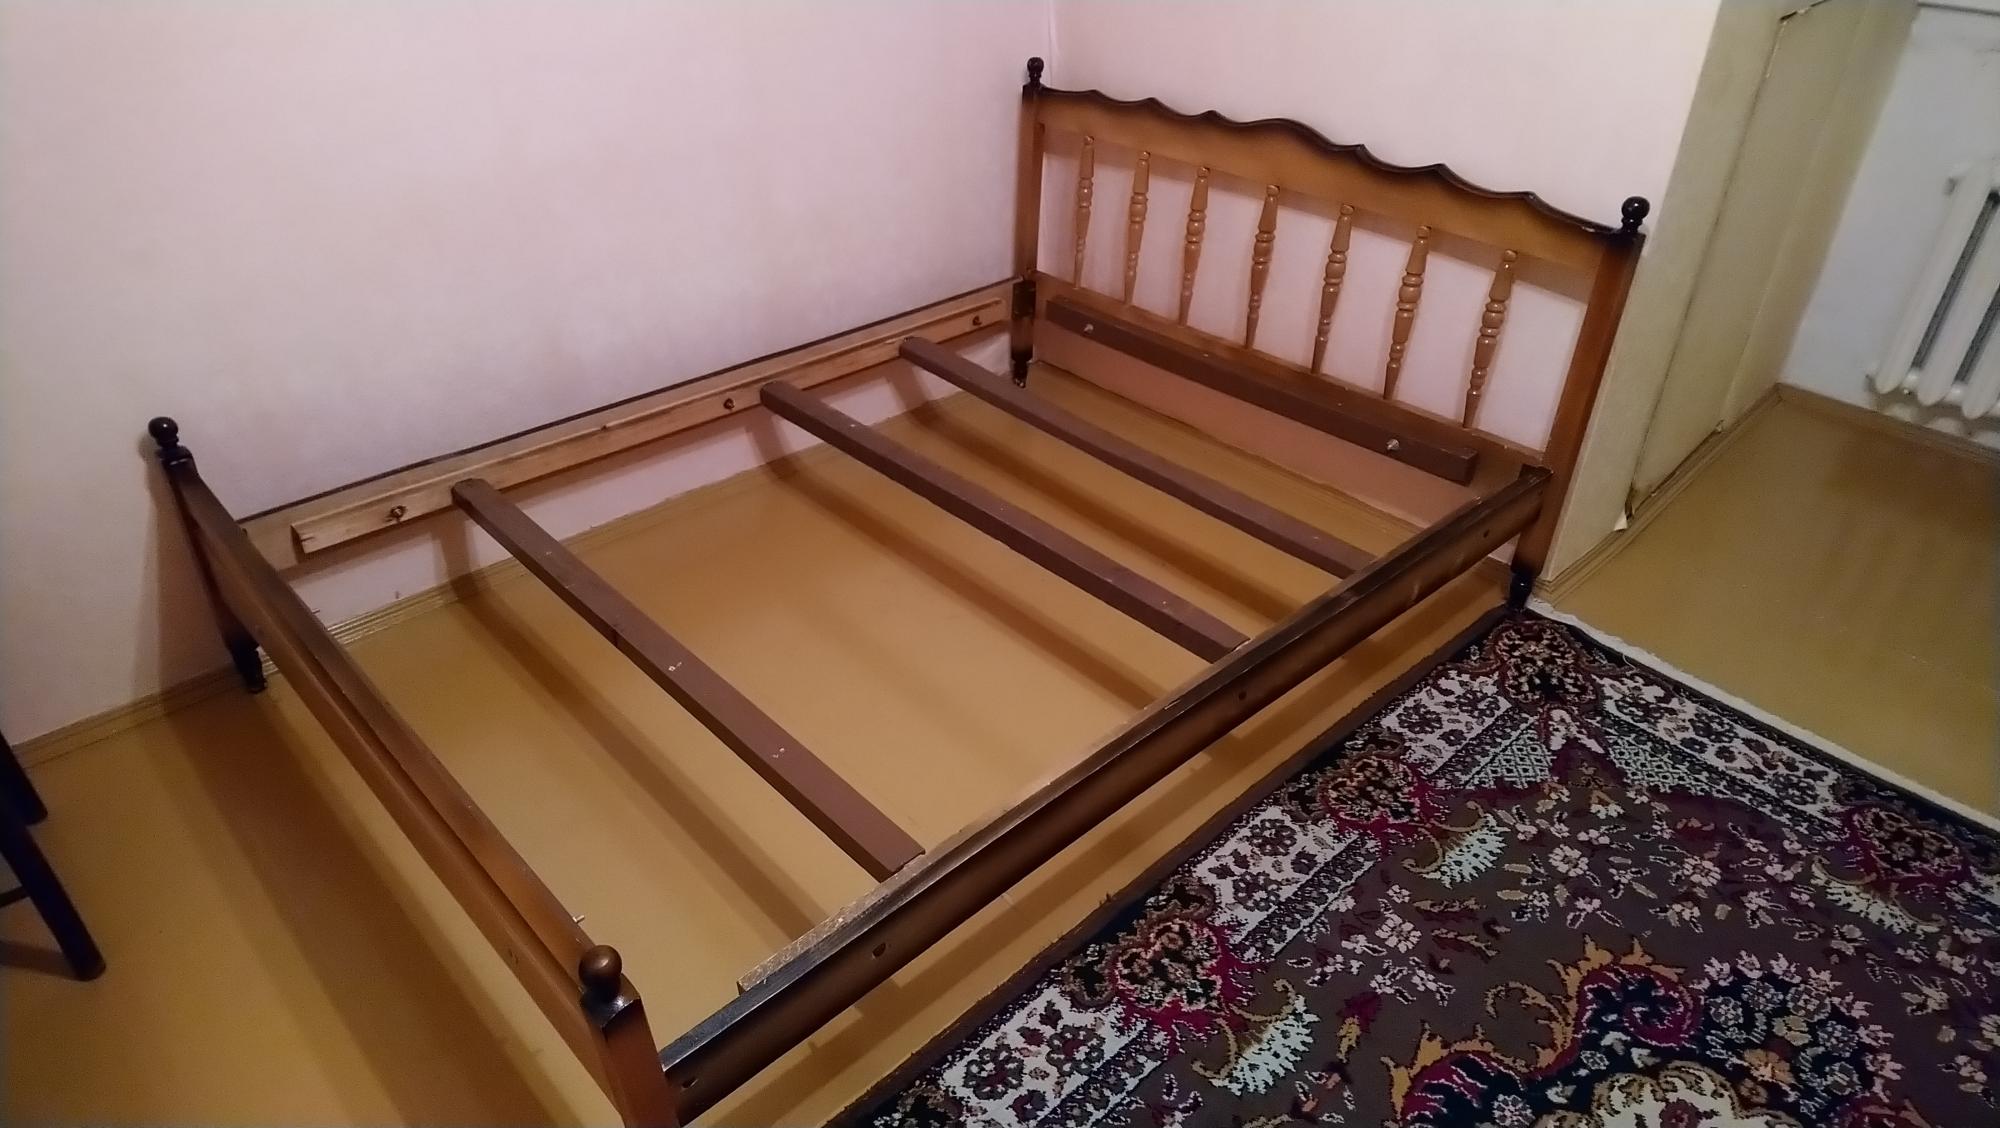 Авито мебель кровати б у. Кровати б/у размер 140. Авито кровать. Кровати на авито б/у. Кровати на авито в Москве б у.